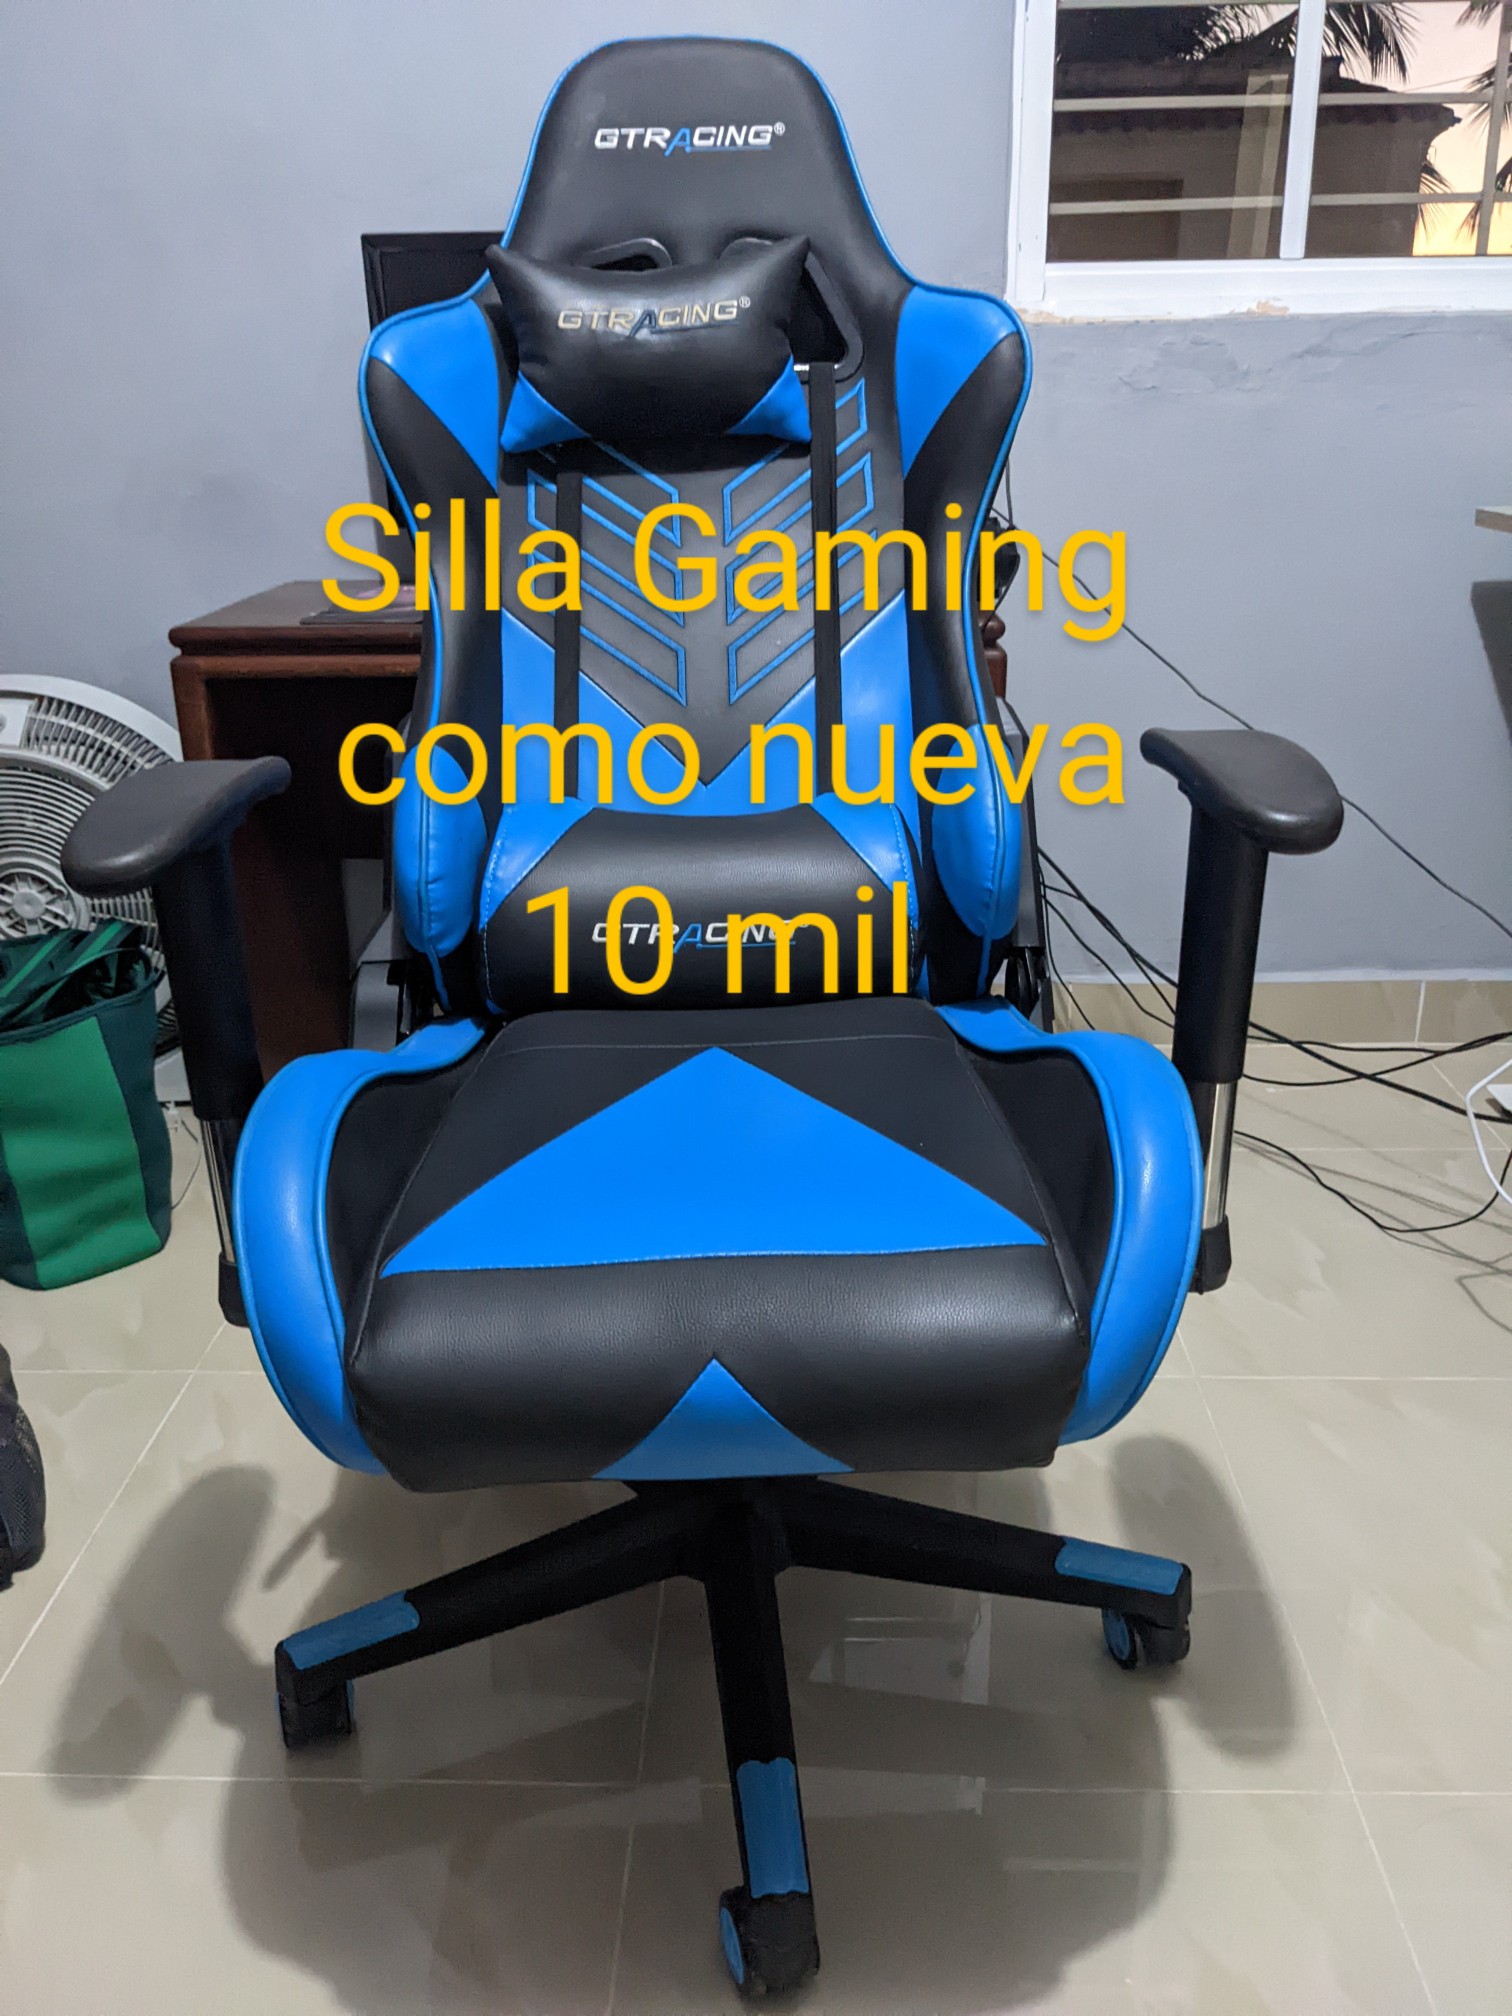 Silla Gaming - Poco uso